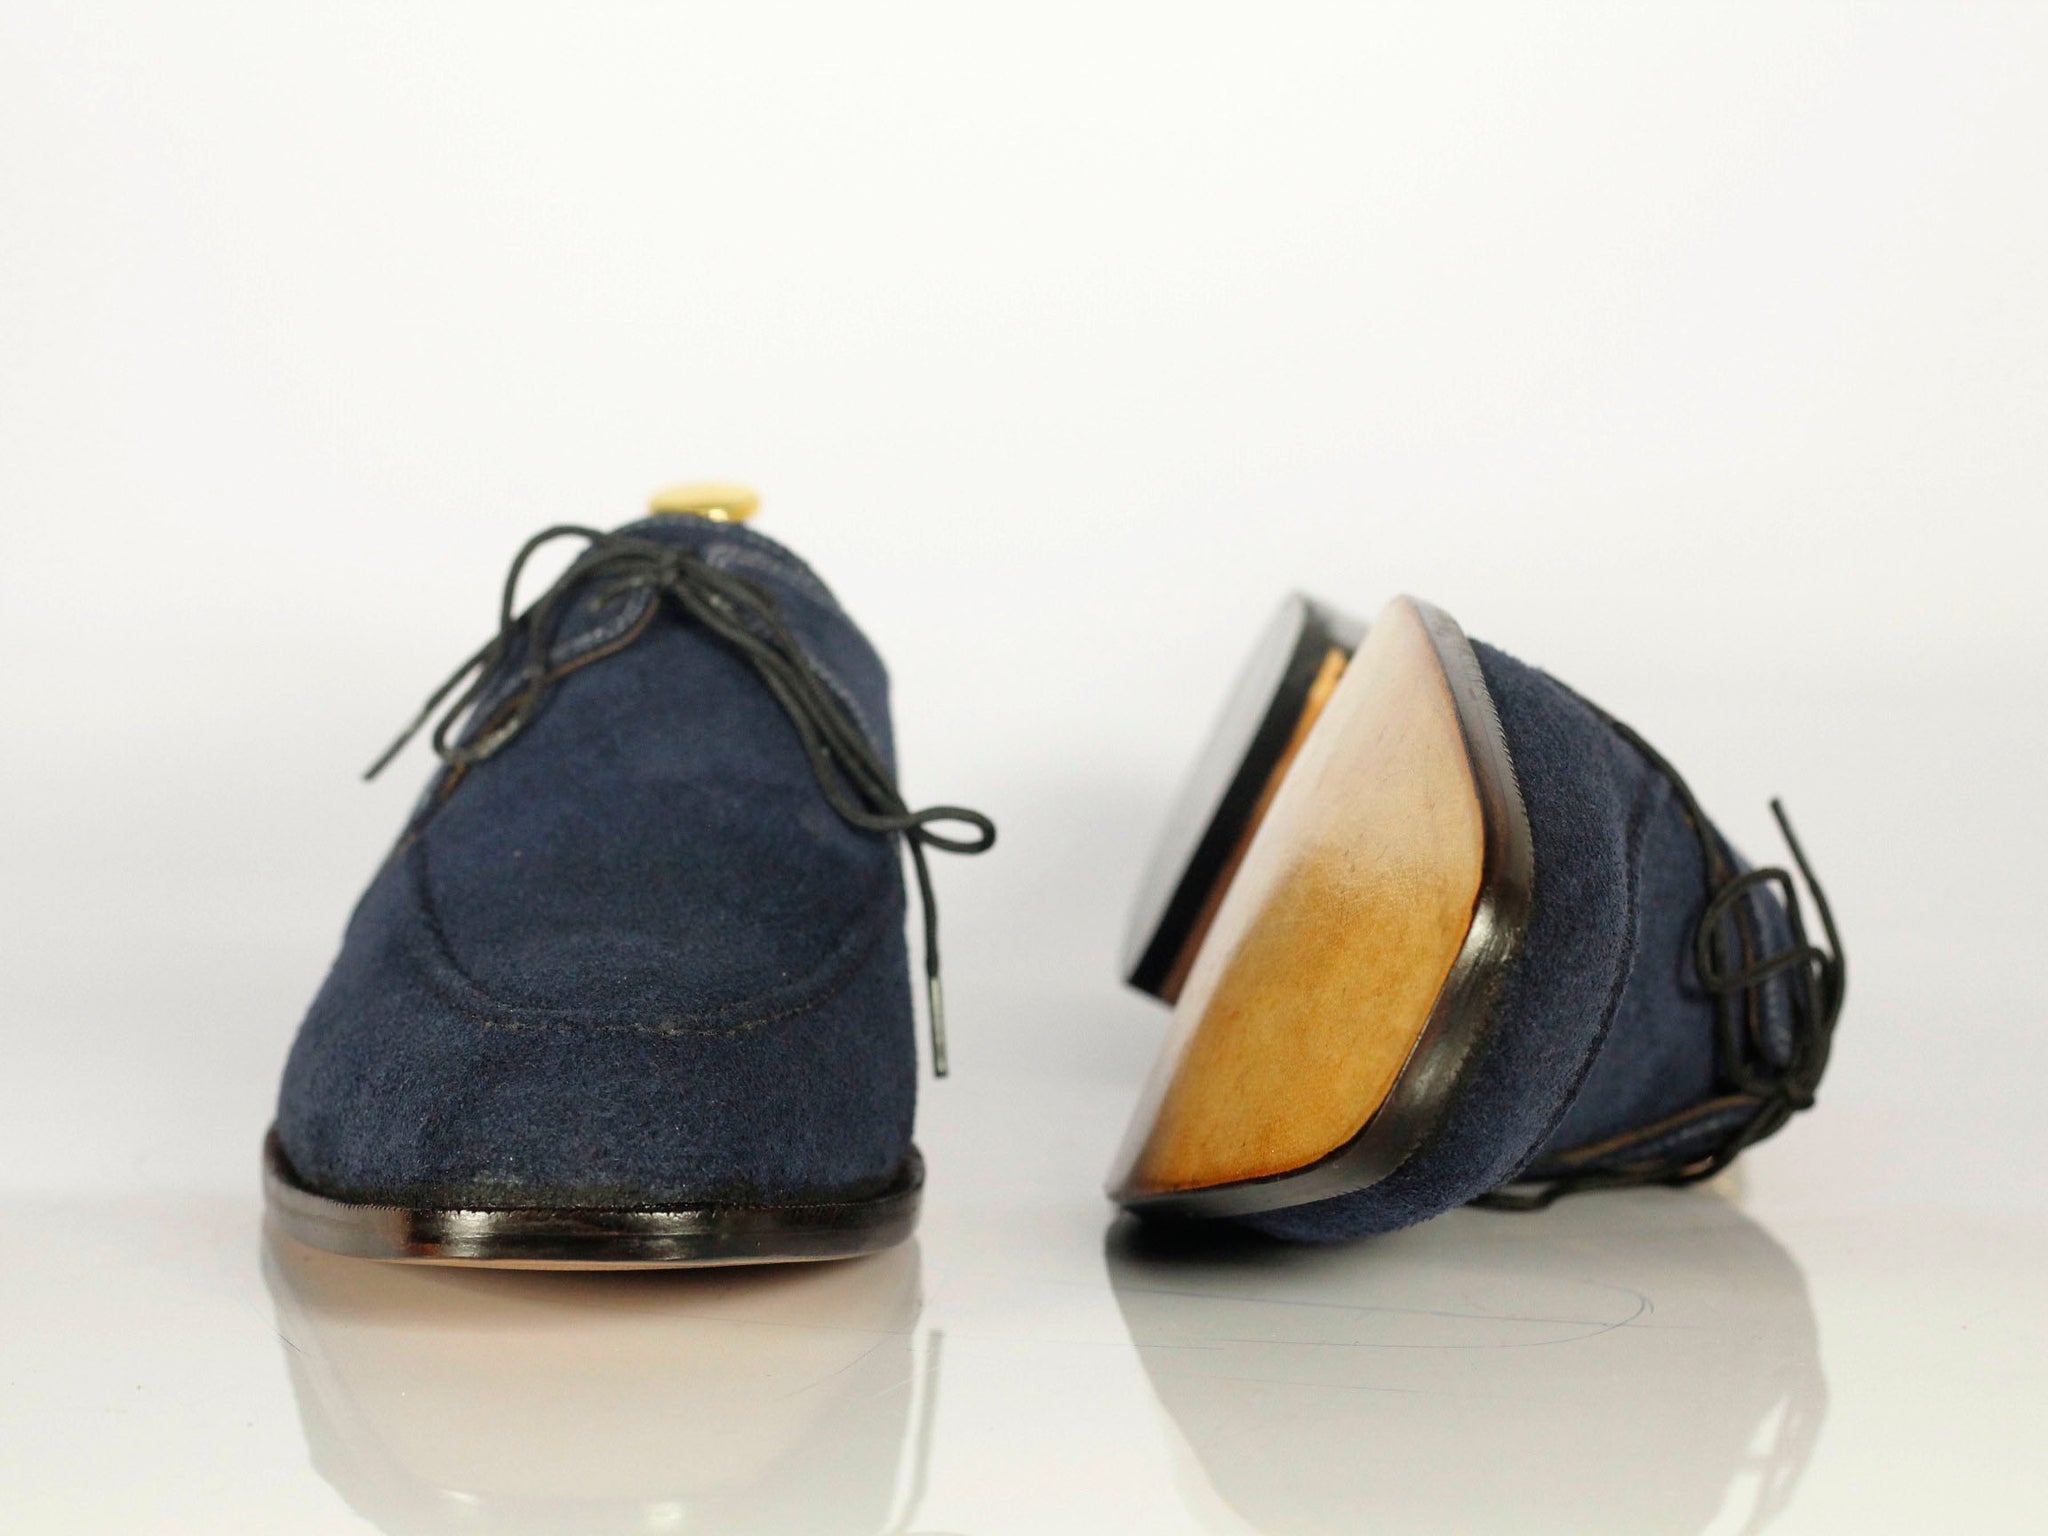 Handmade Men's Blue Leather Side Lace Up Shoes, Men Designer Dress Formal  Luxury Shoes